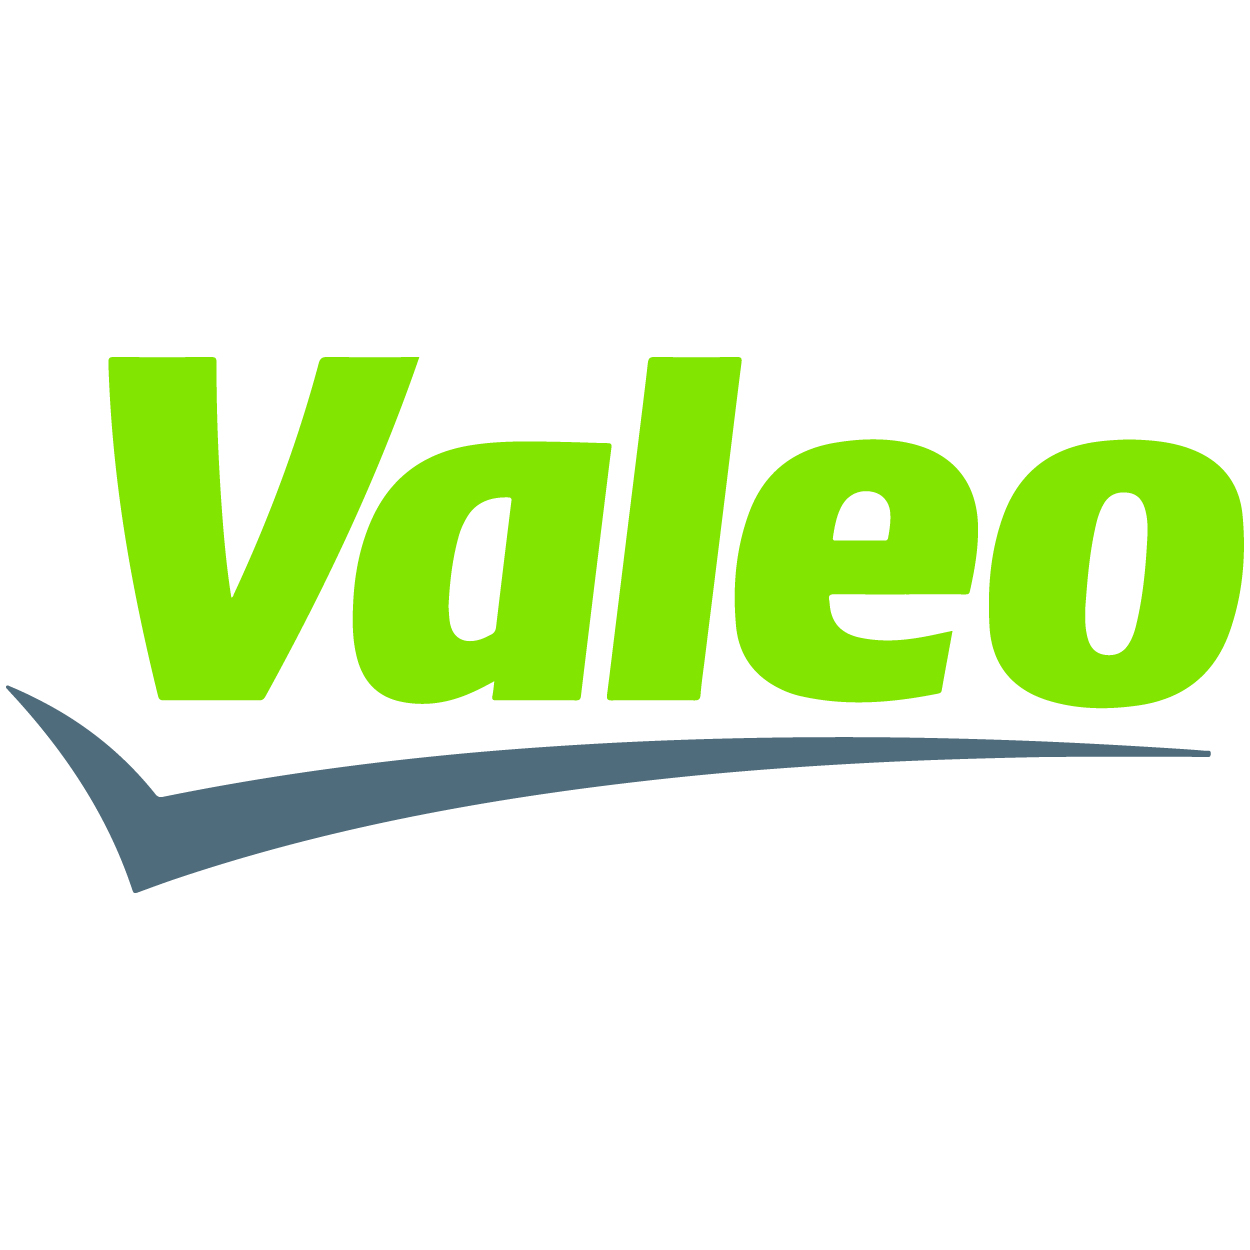 Logo_Valeo